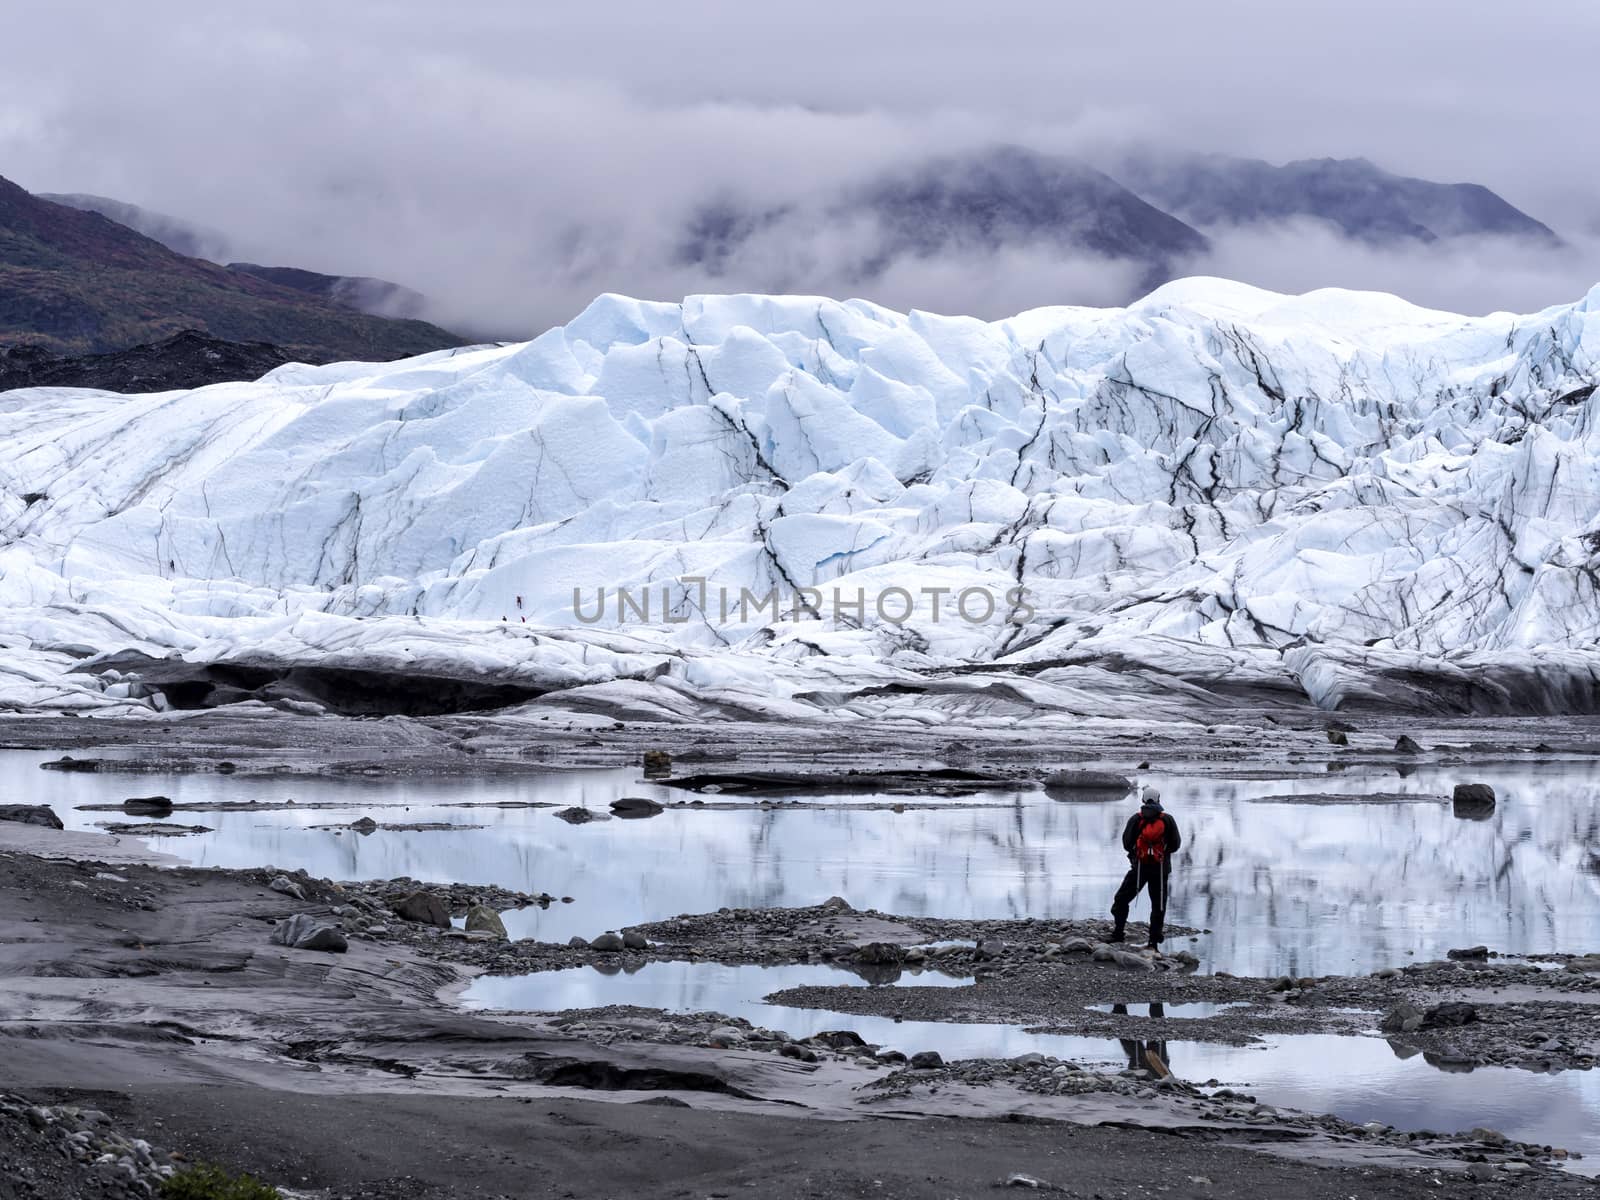 Glacier Explorer - Remote Alaska by leieng